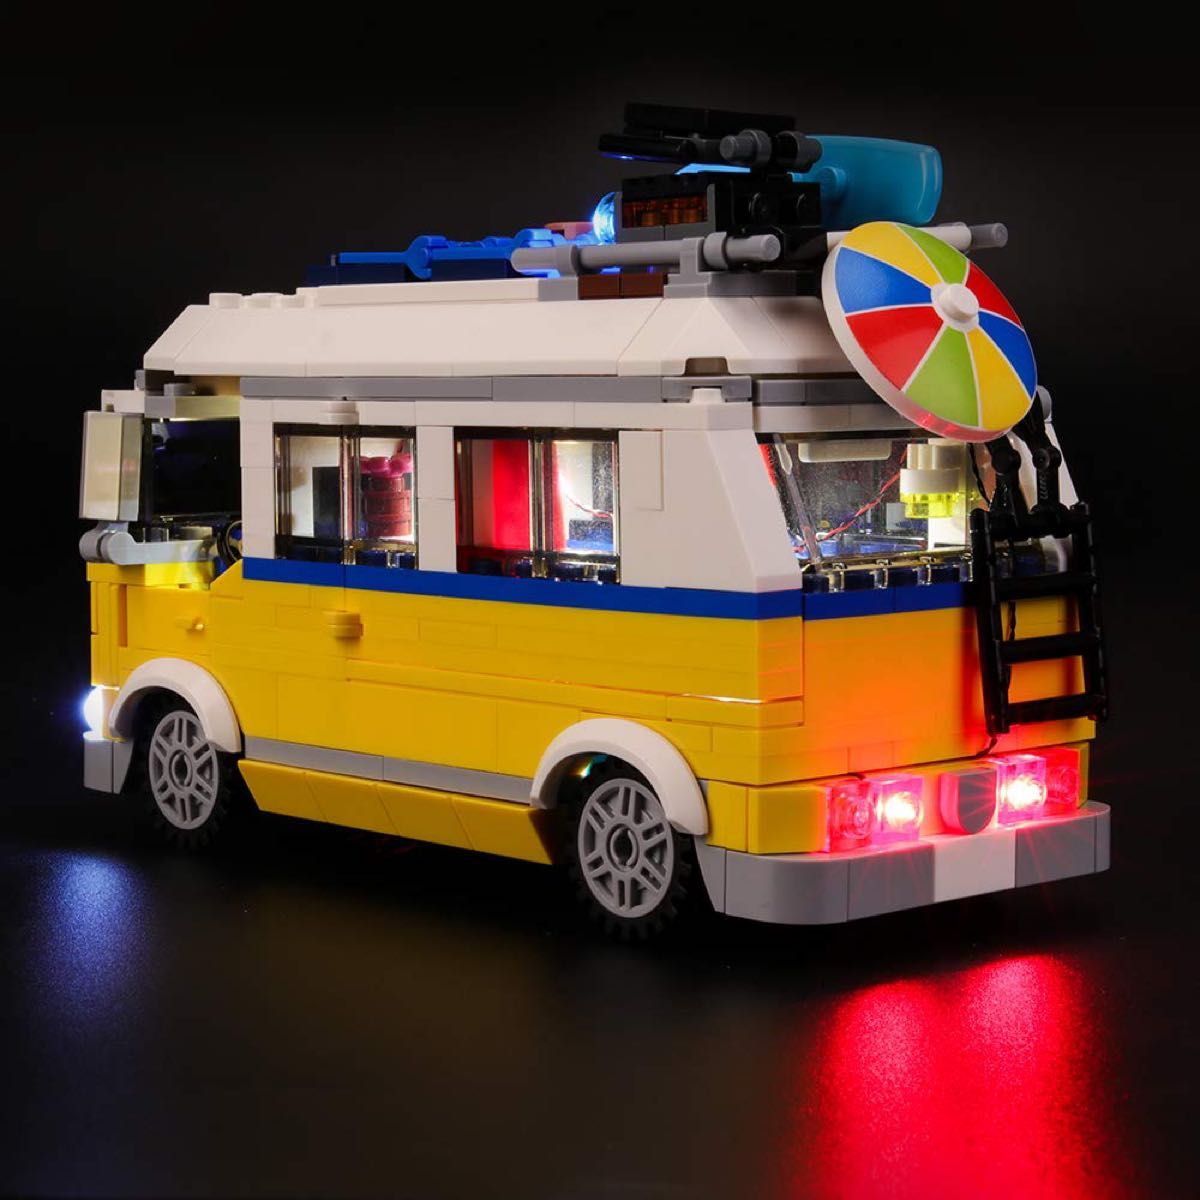 レゴ 31079 互換クリエイター サーファーのキャンプワゴン BRIKSMAX ライトキットレゴセットは含まれません